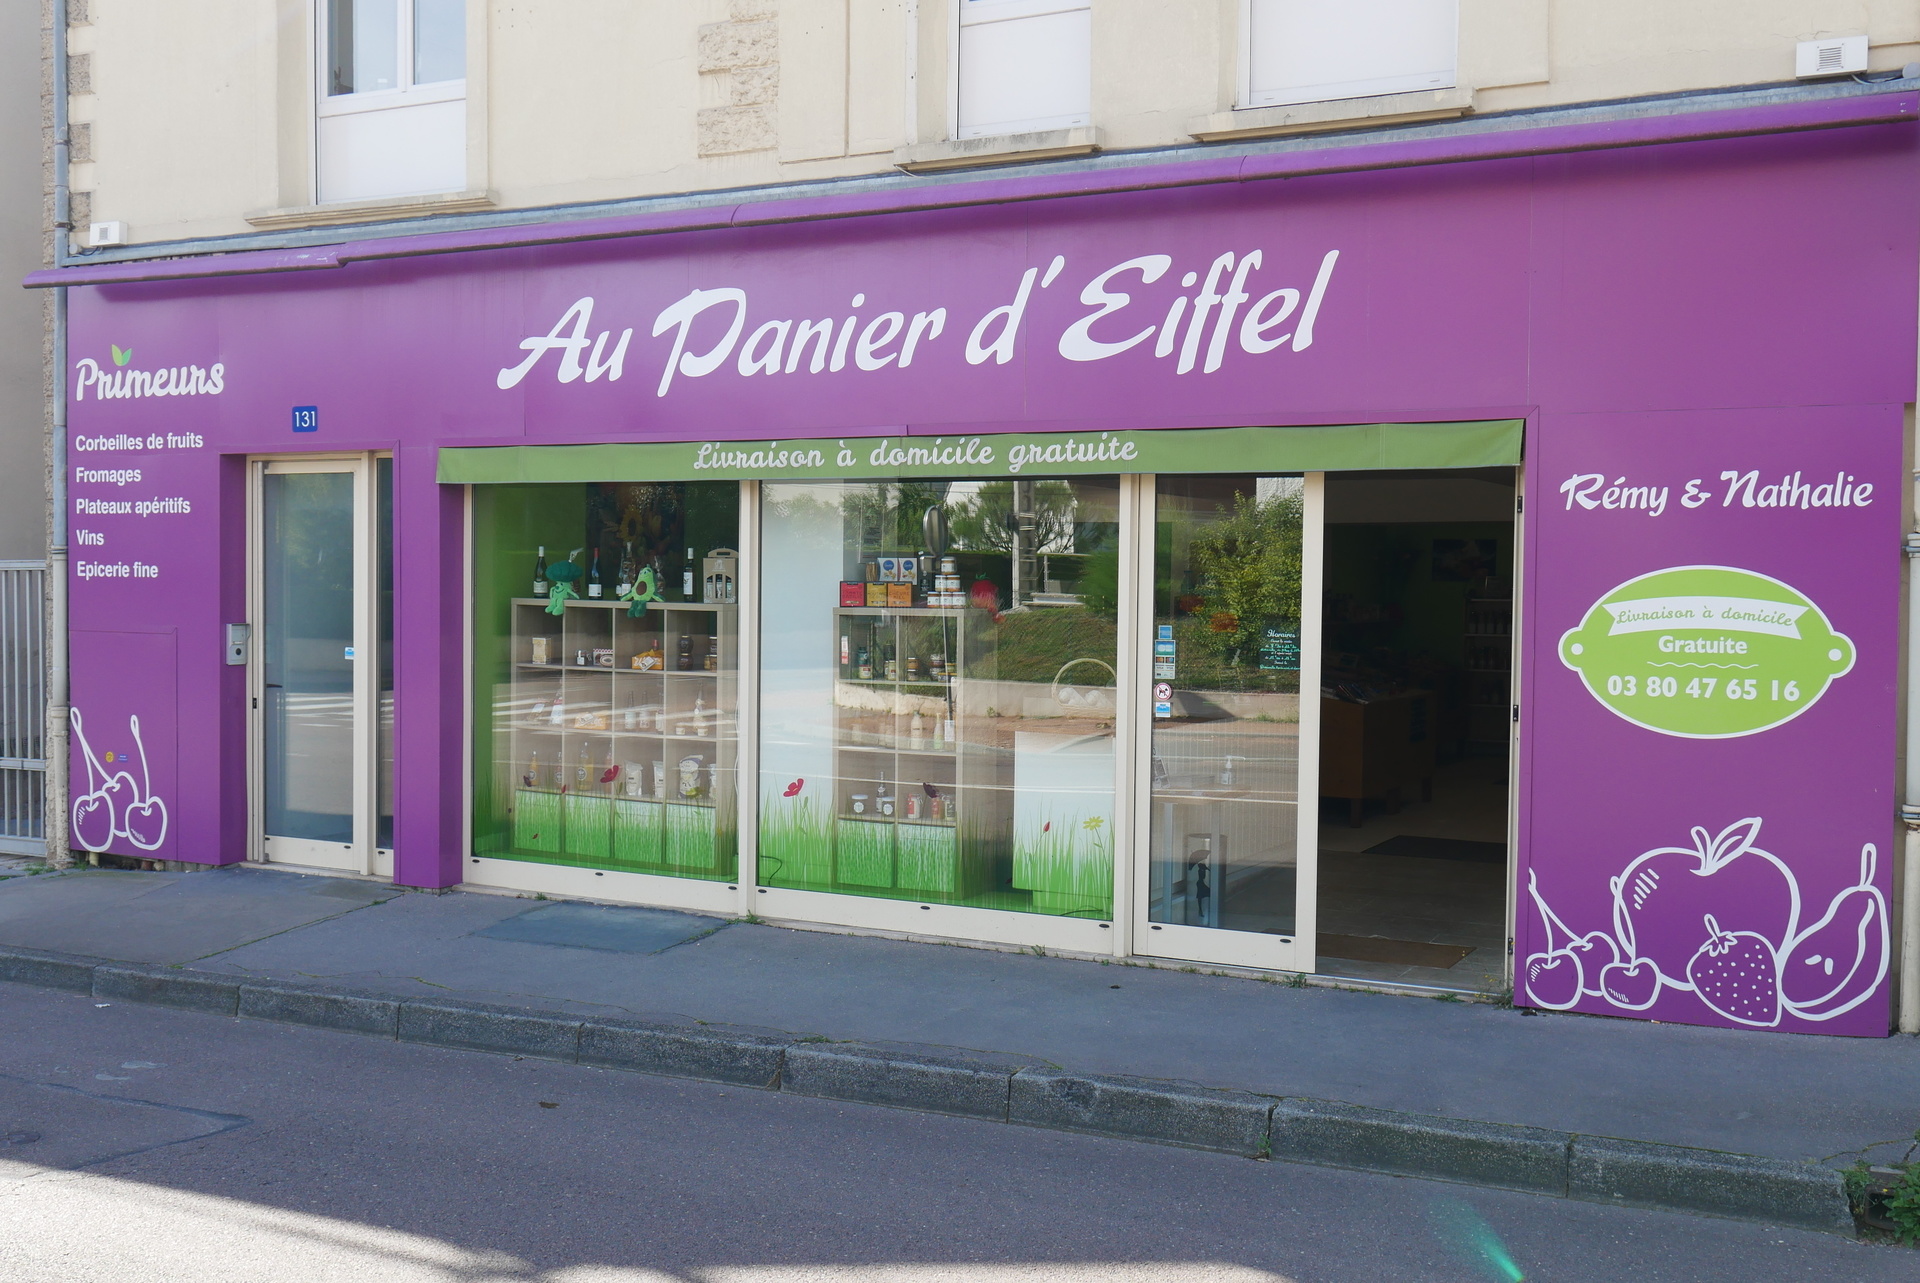 Boutique AU PANIER D'EIFFEL - Dijon